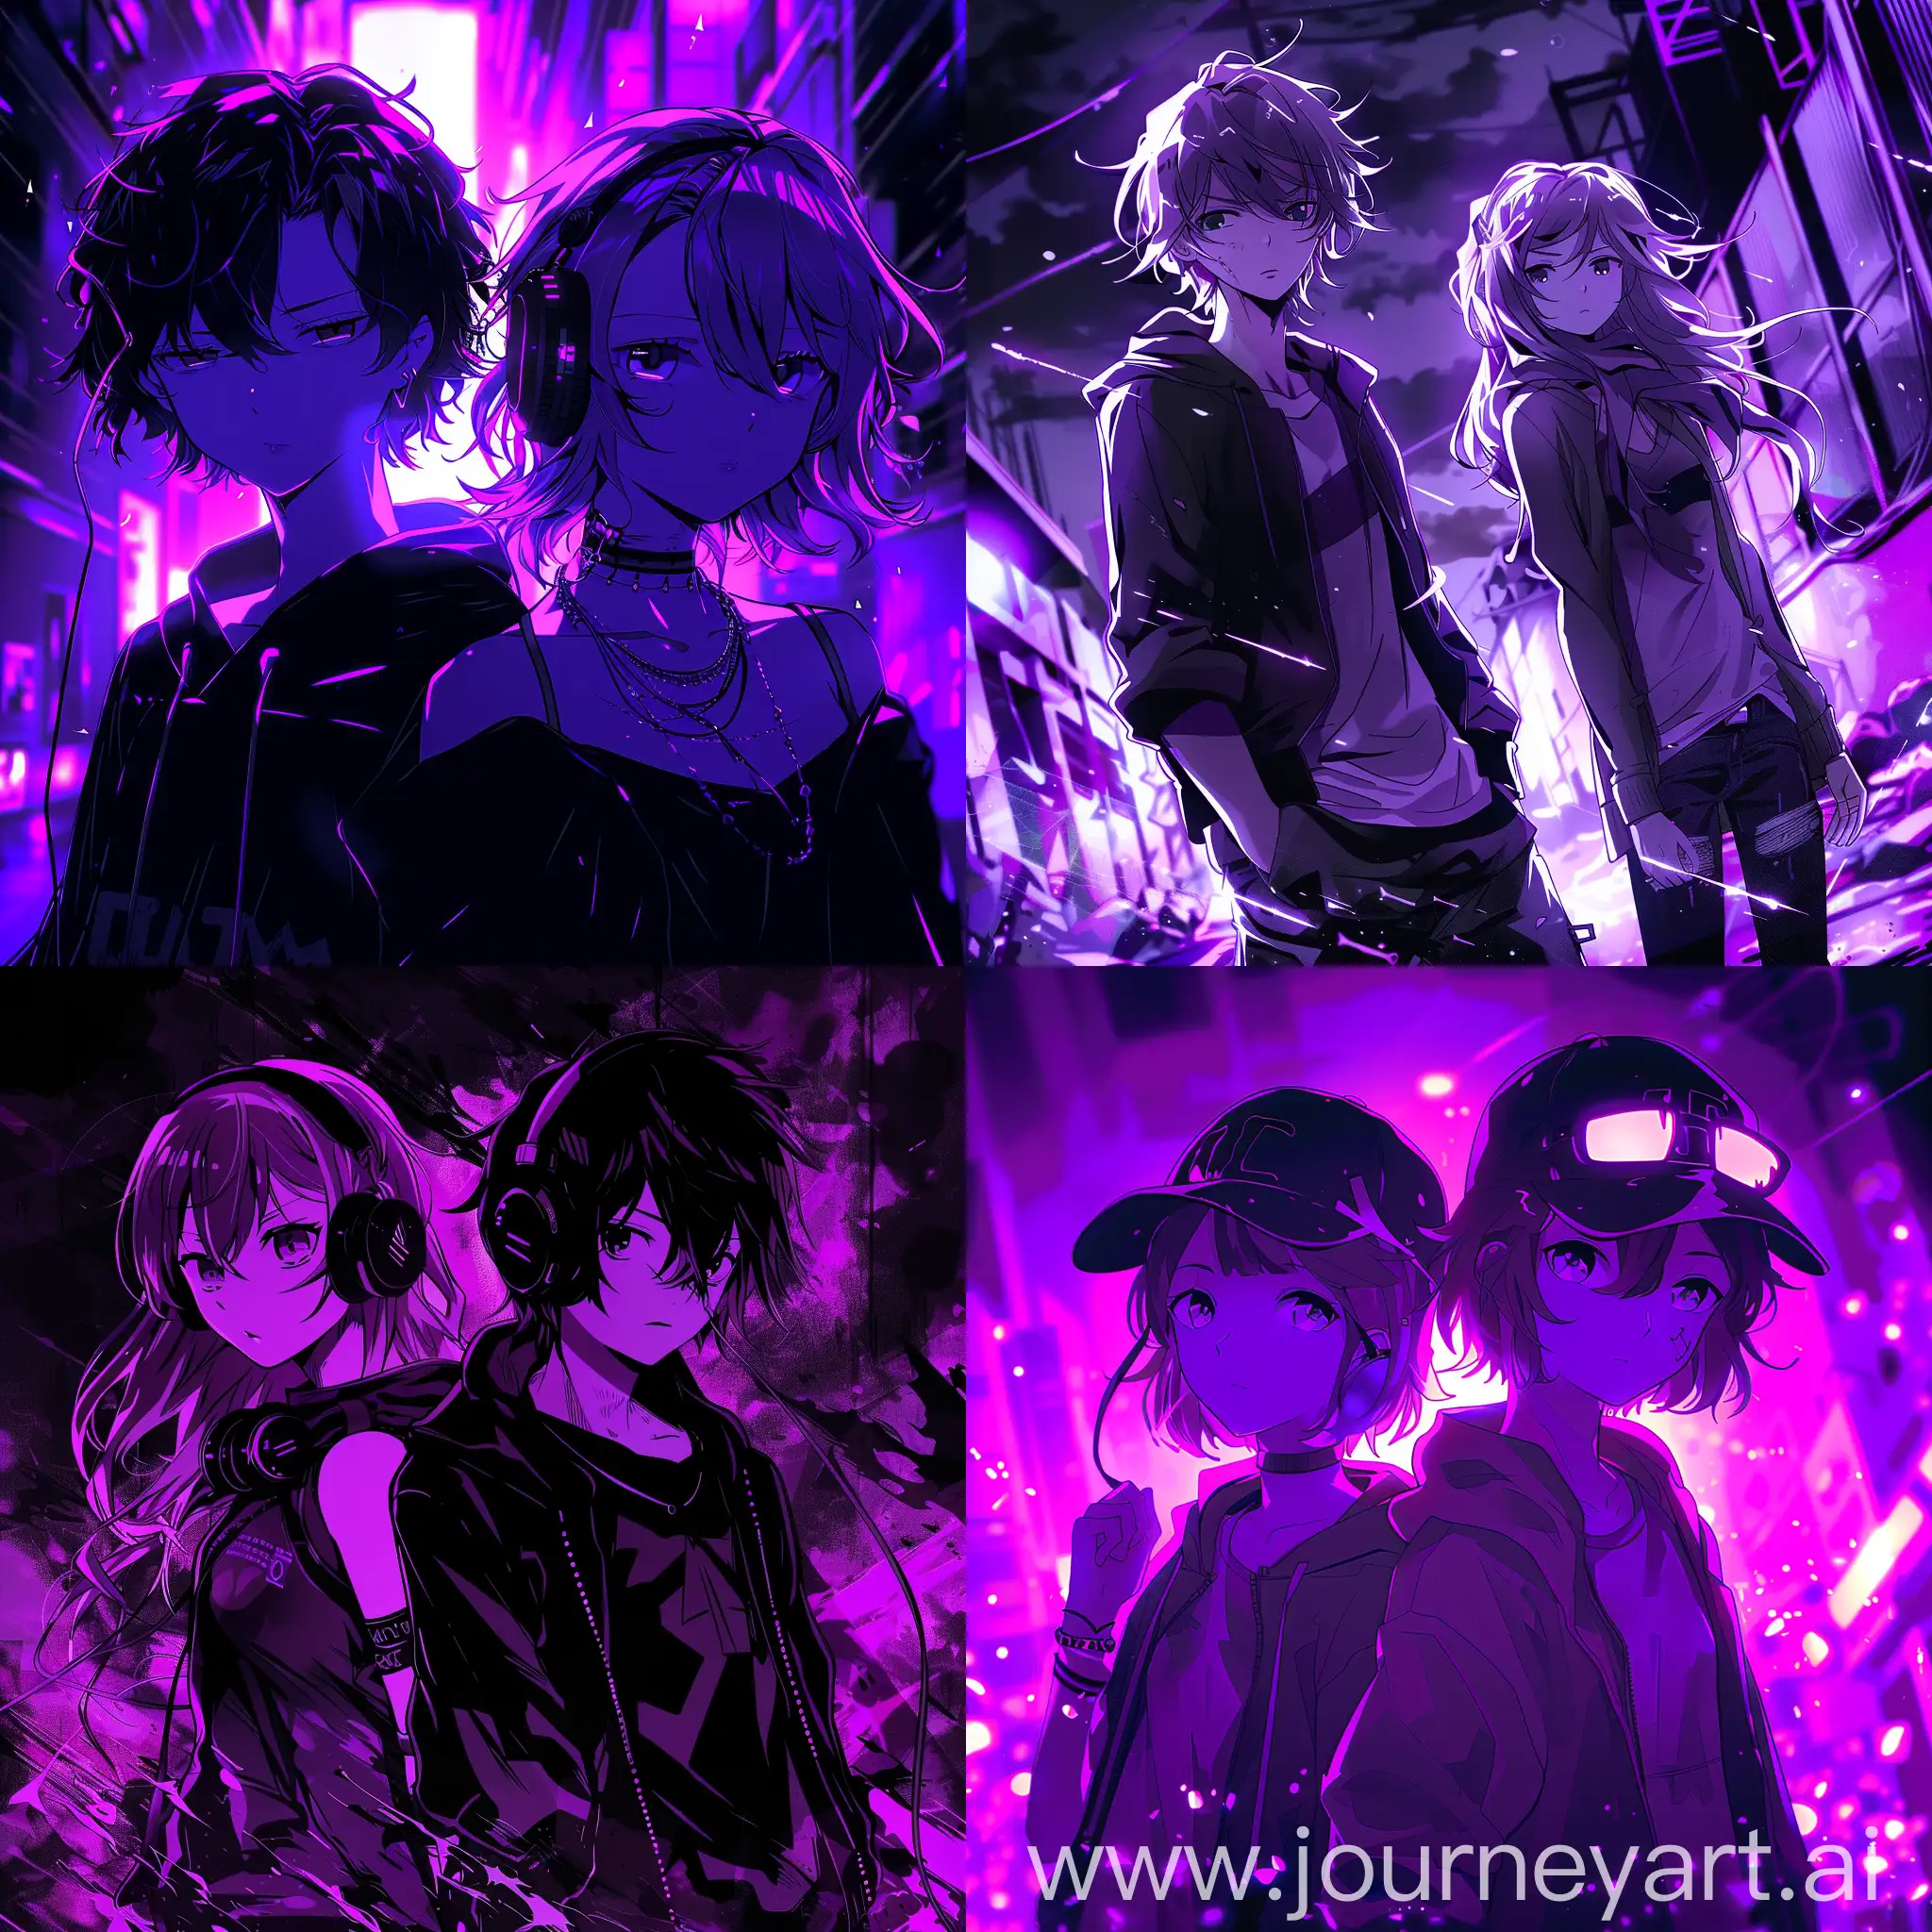 два аниме героя, мальчик и девочка  в breakcore стиле, в hd качестве, фиолетовых тонах